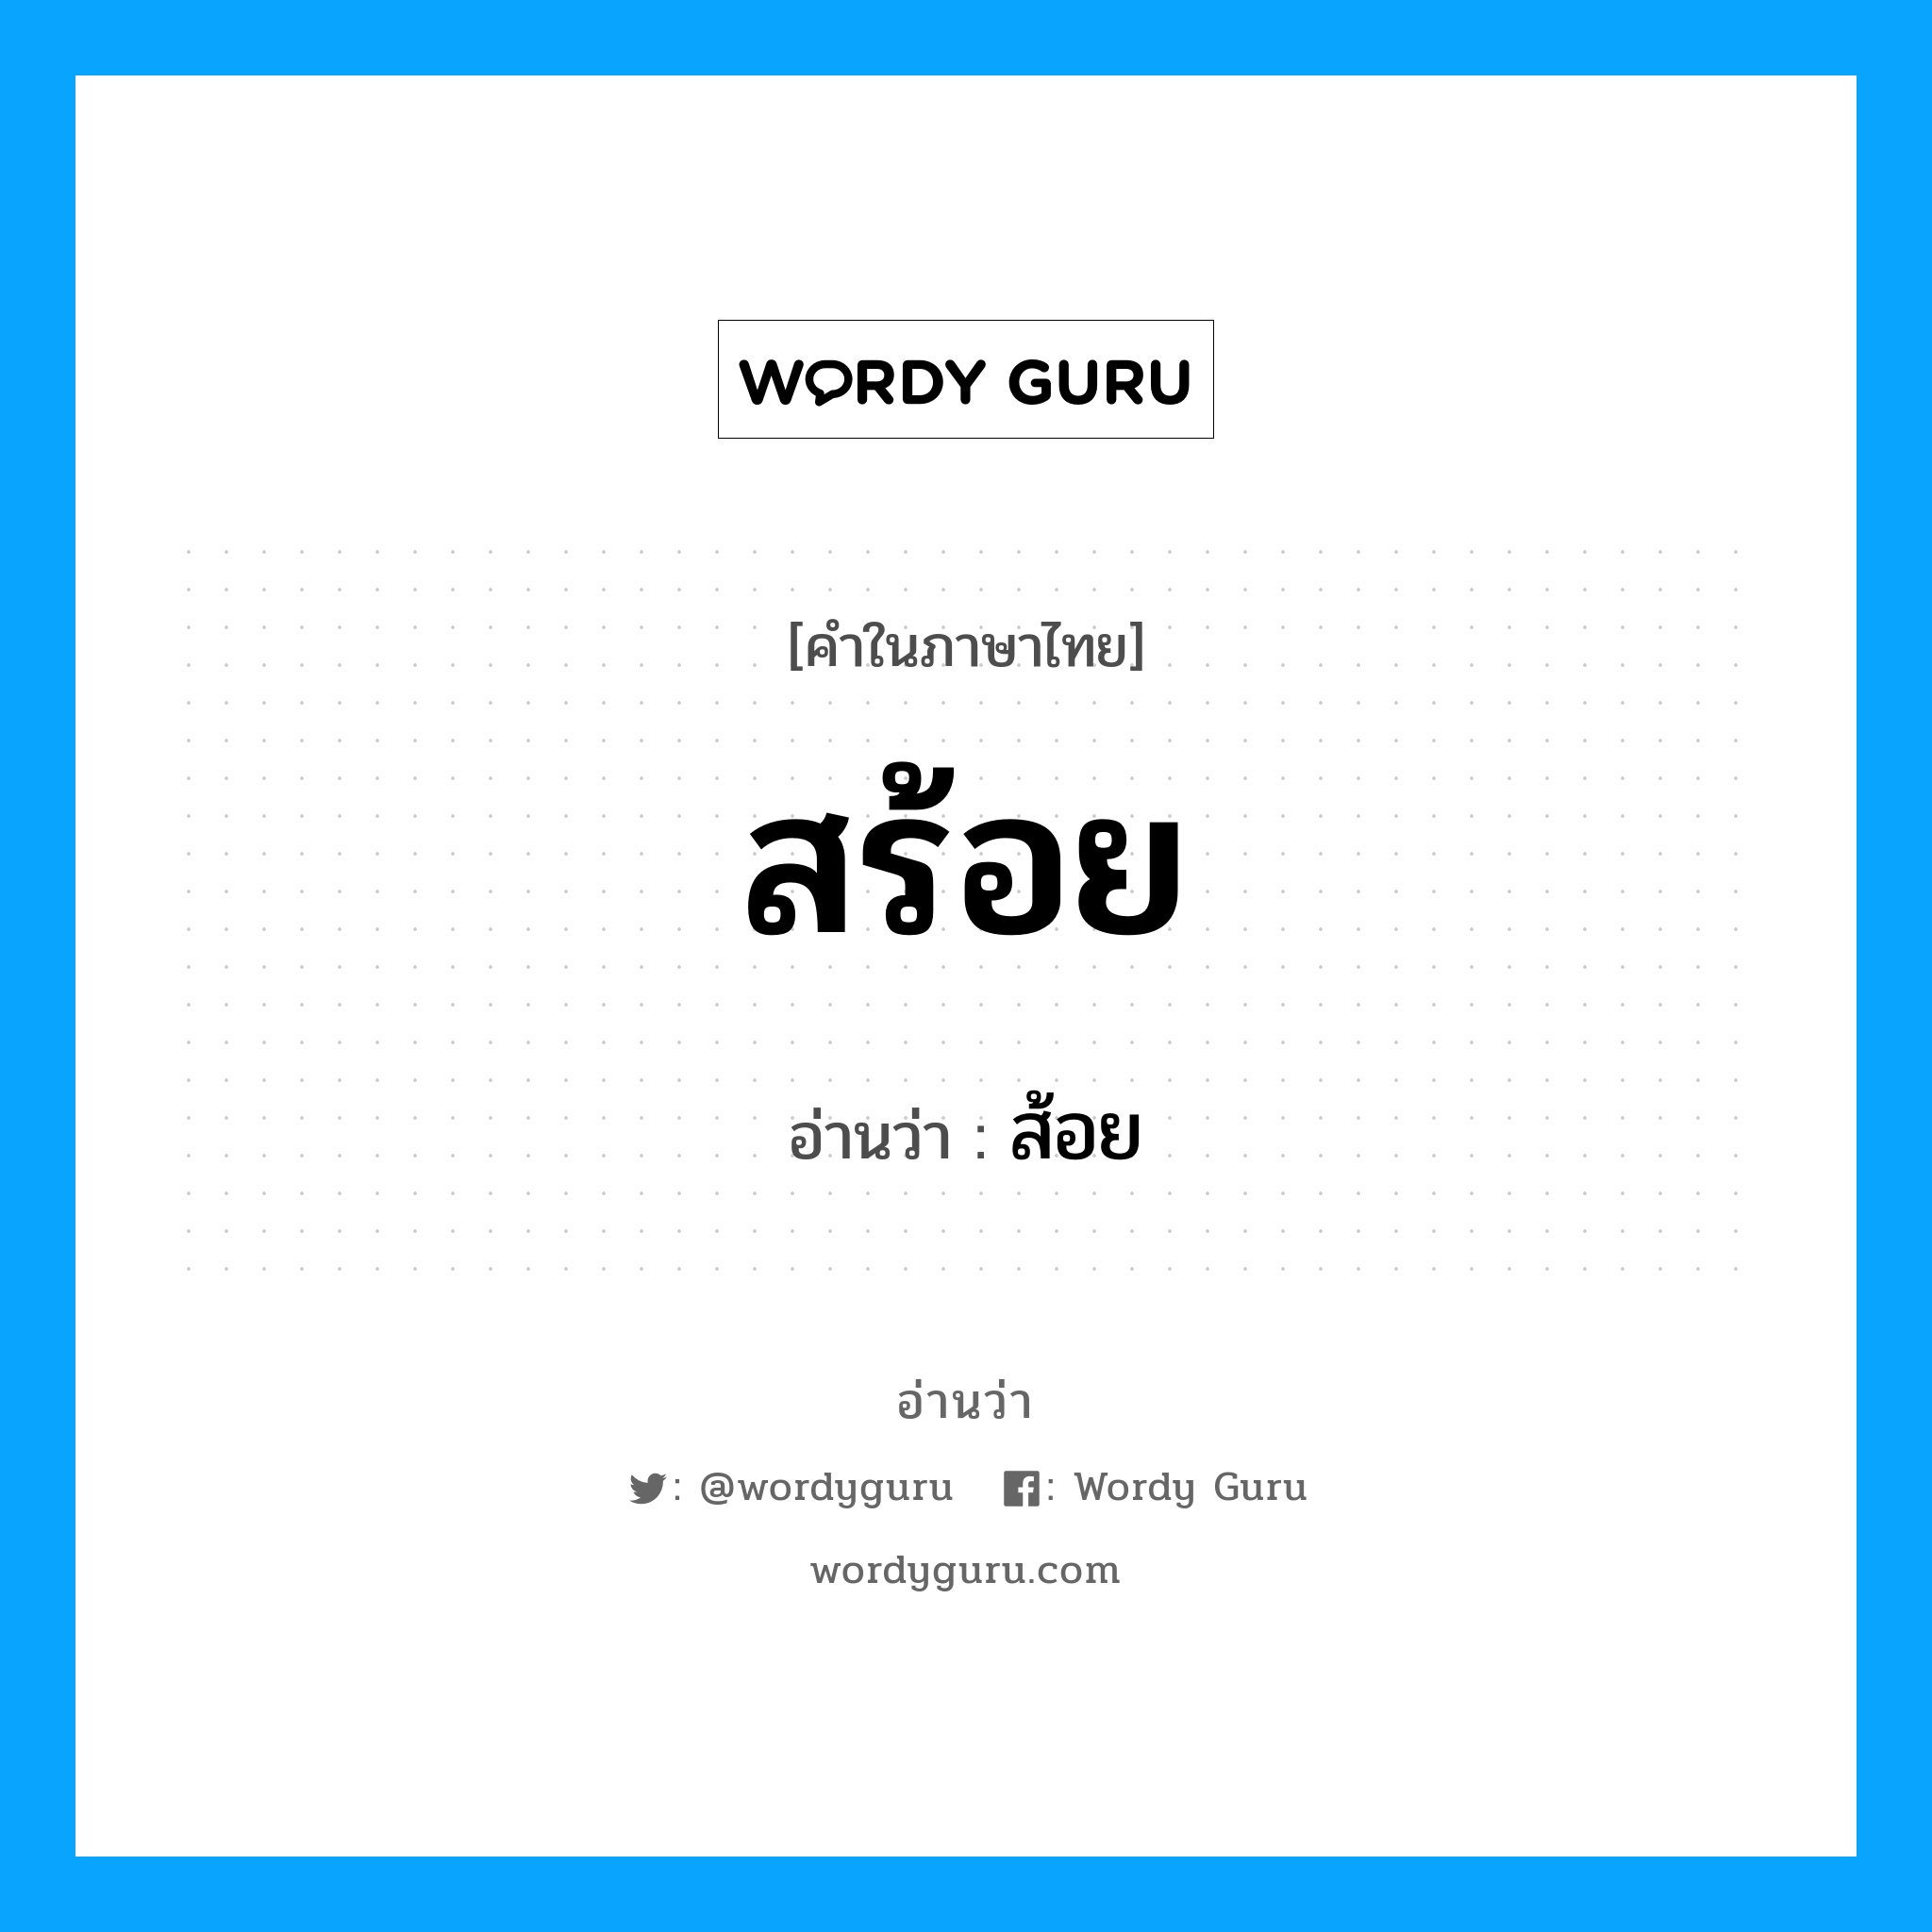 ส้อย เป็นคำอ่านของคำไหน?, คำในภาษาไทย ส้อย อ่านว่า สร้อย